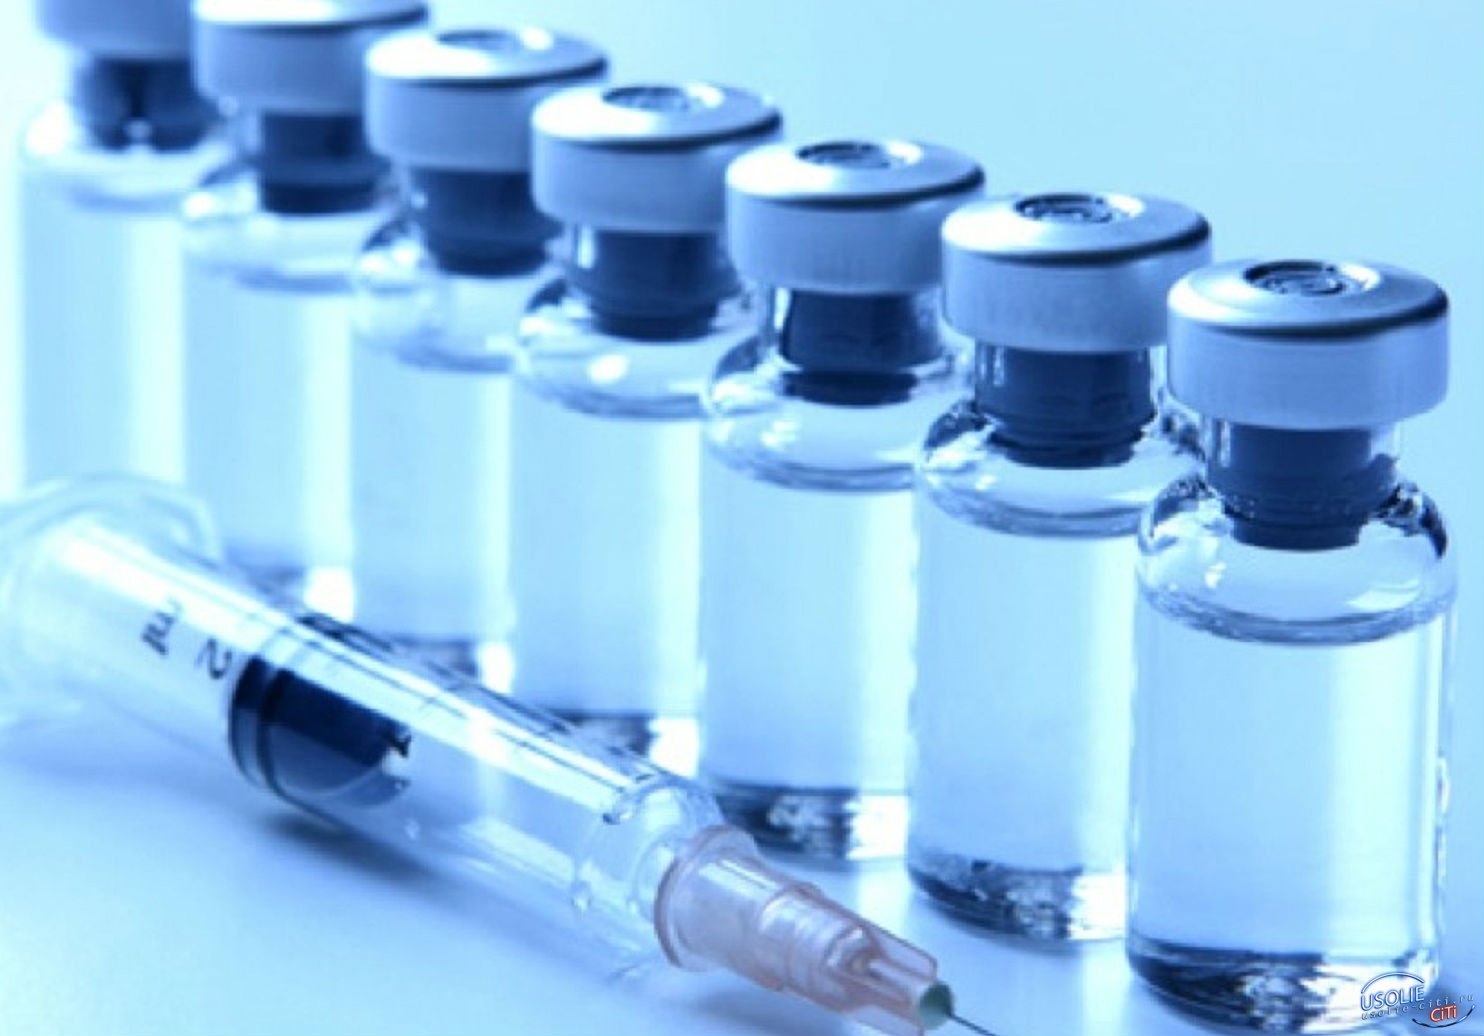 Новая партия вакцины от коронавирусной инфекции пришла в Усолье